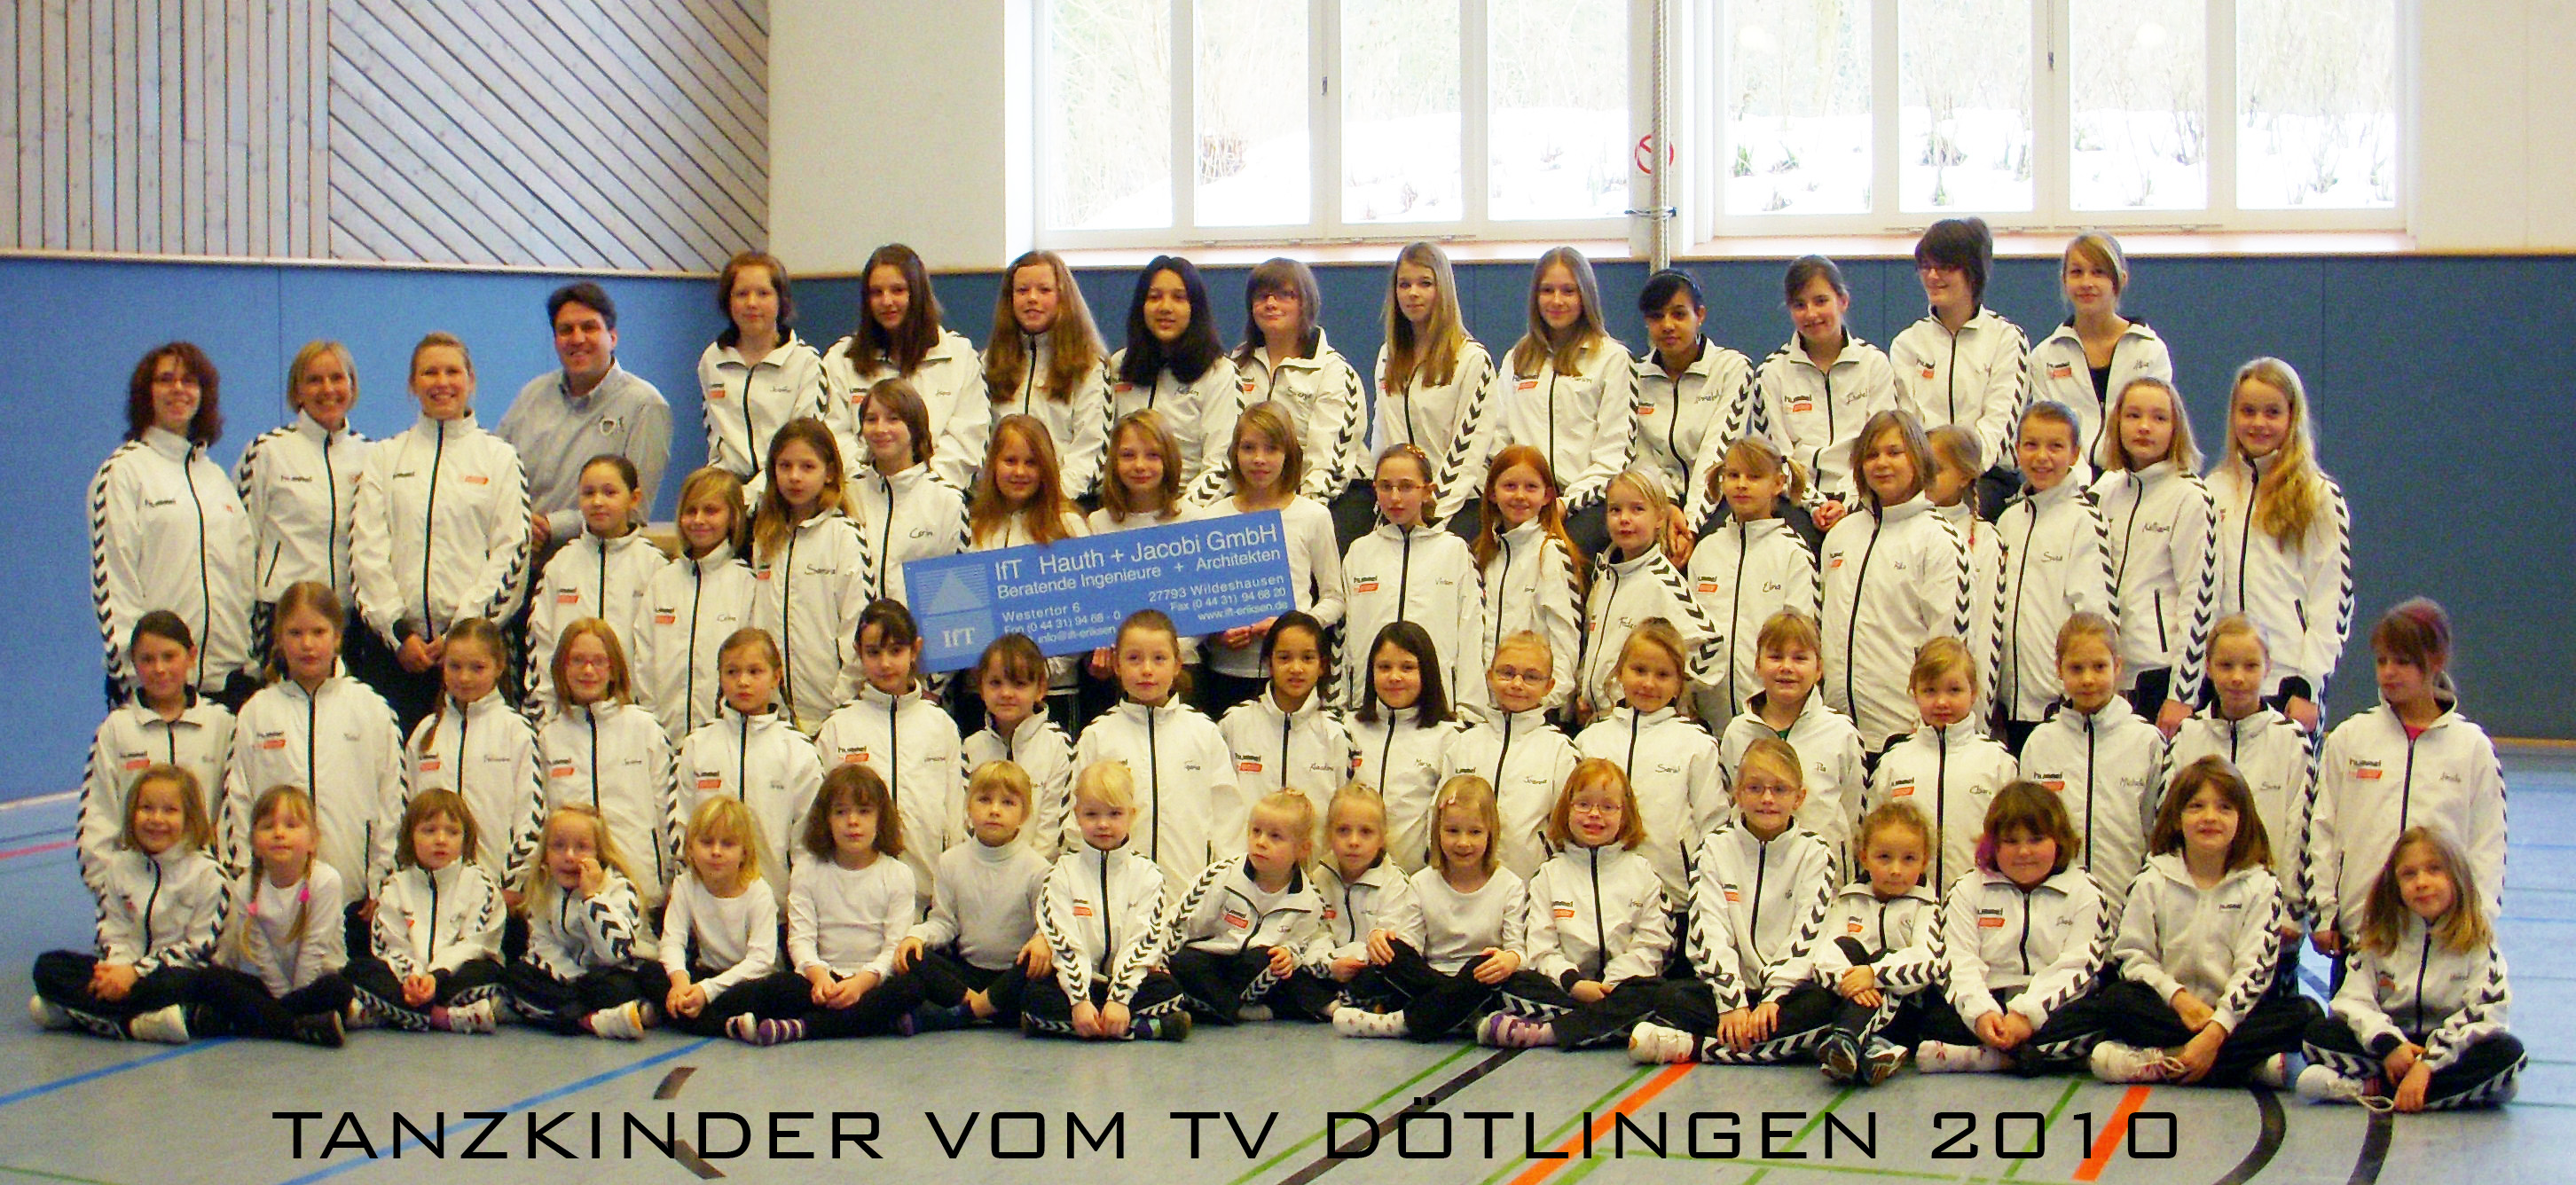 Tanzsparte TV Dötlingen bekam 2010 neue Anzüge (Architektur und Ingenieurbüro Hauth und Jacobi Wildeshausen)